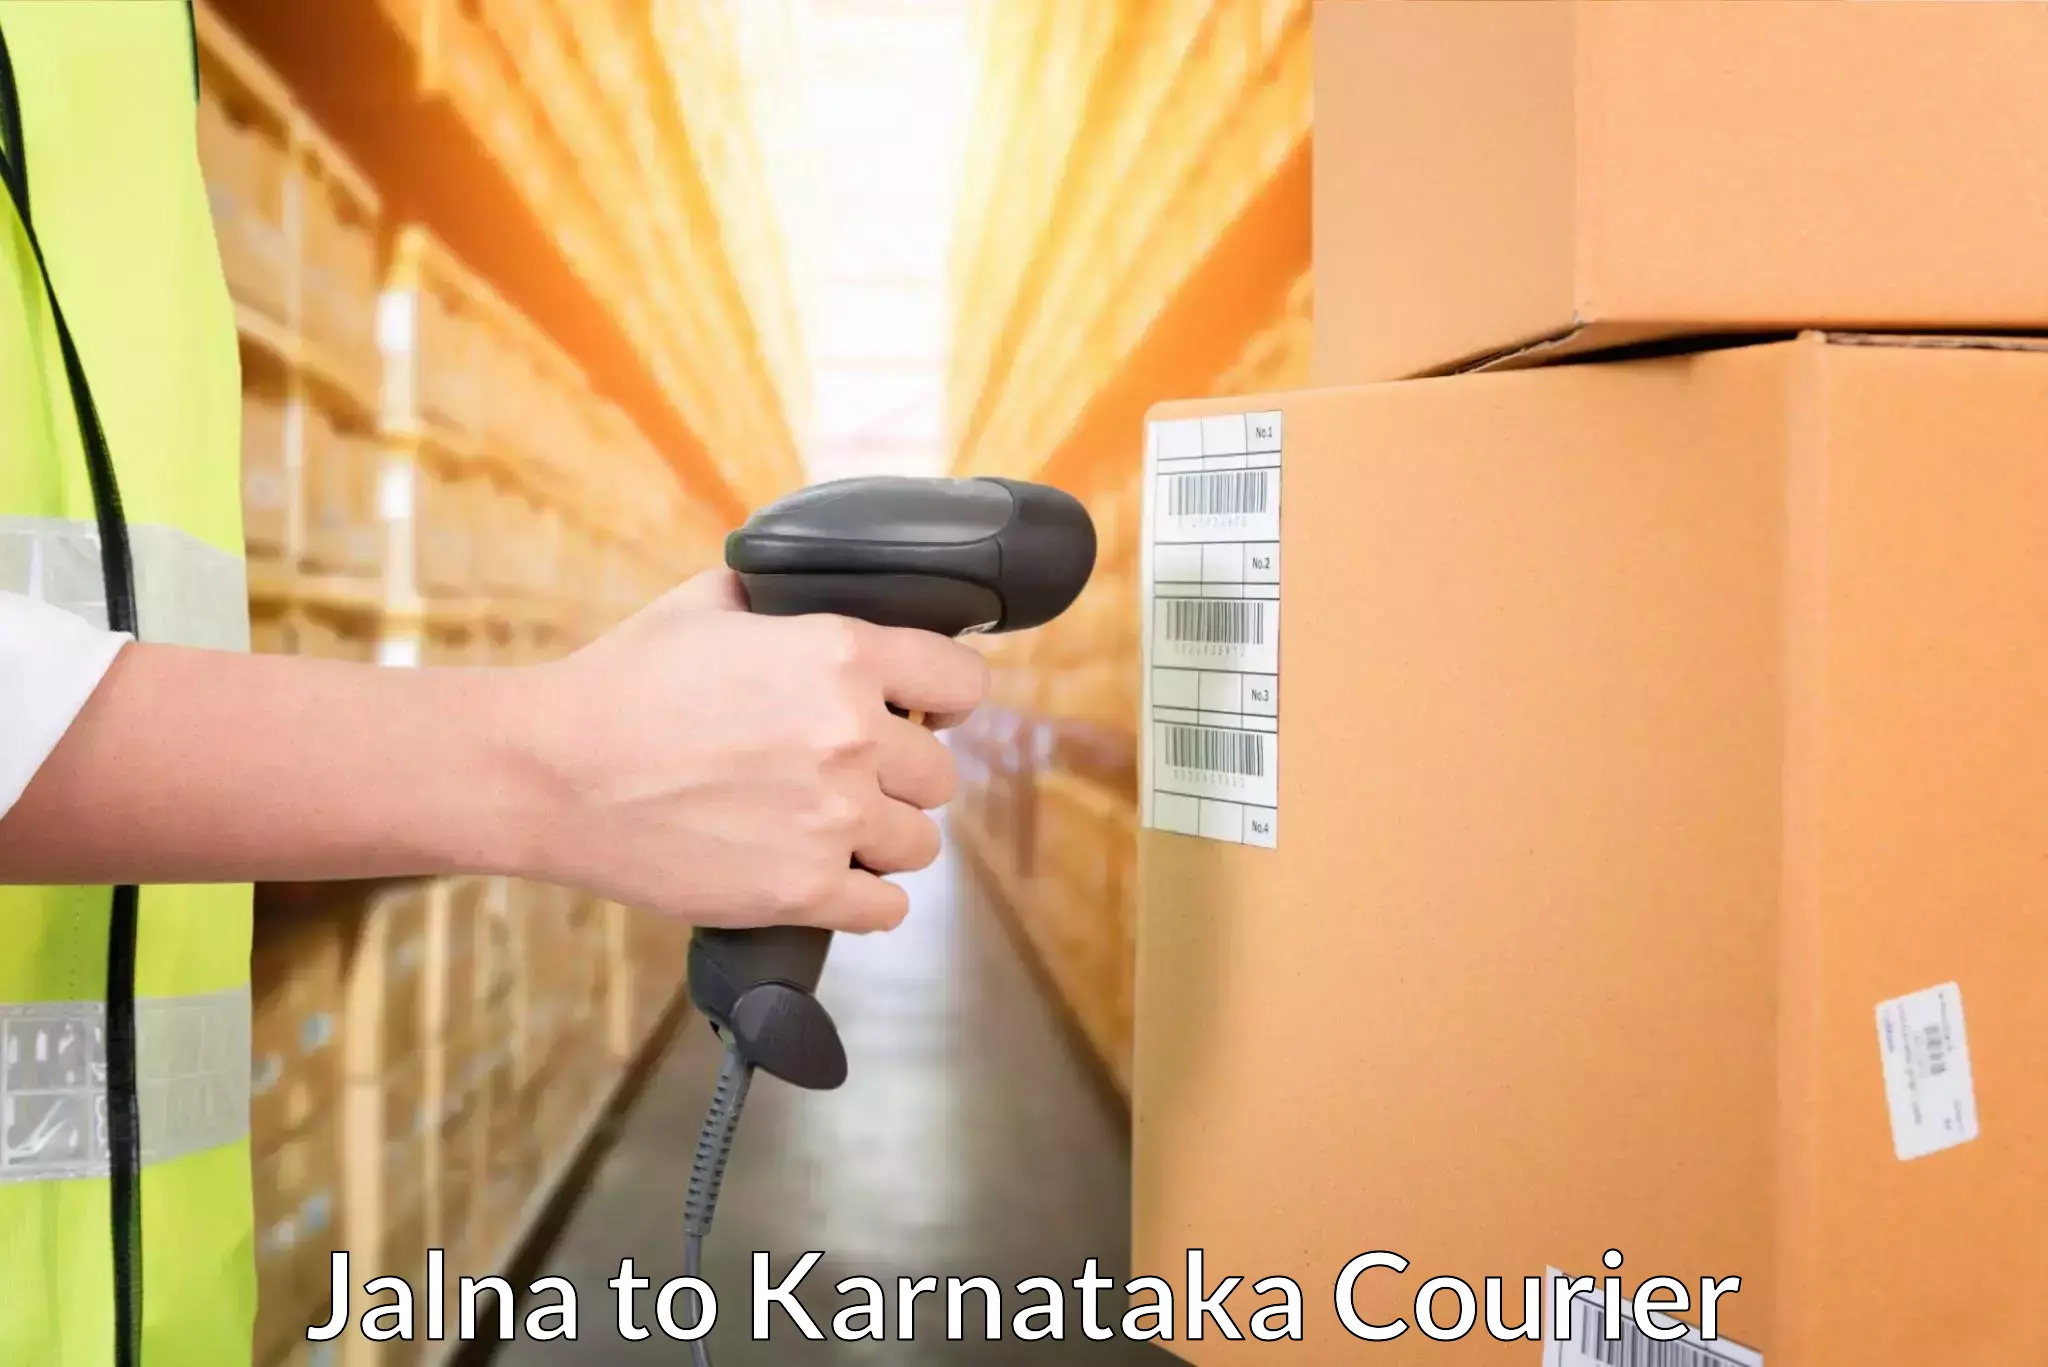 Logistics service provider Jalna to Jamkhandi